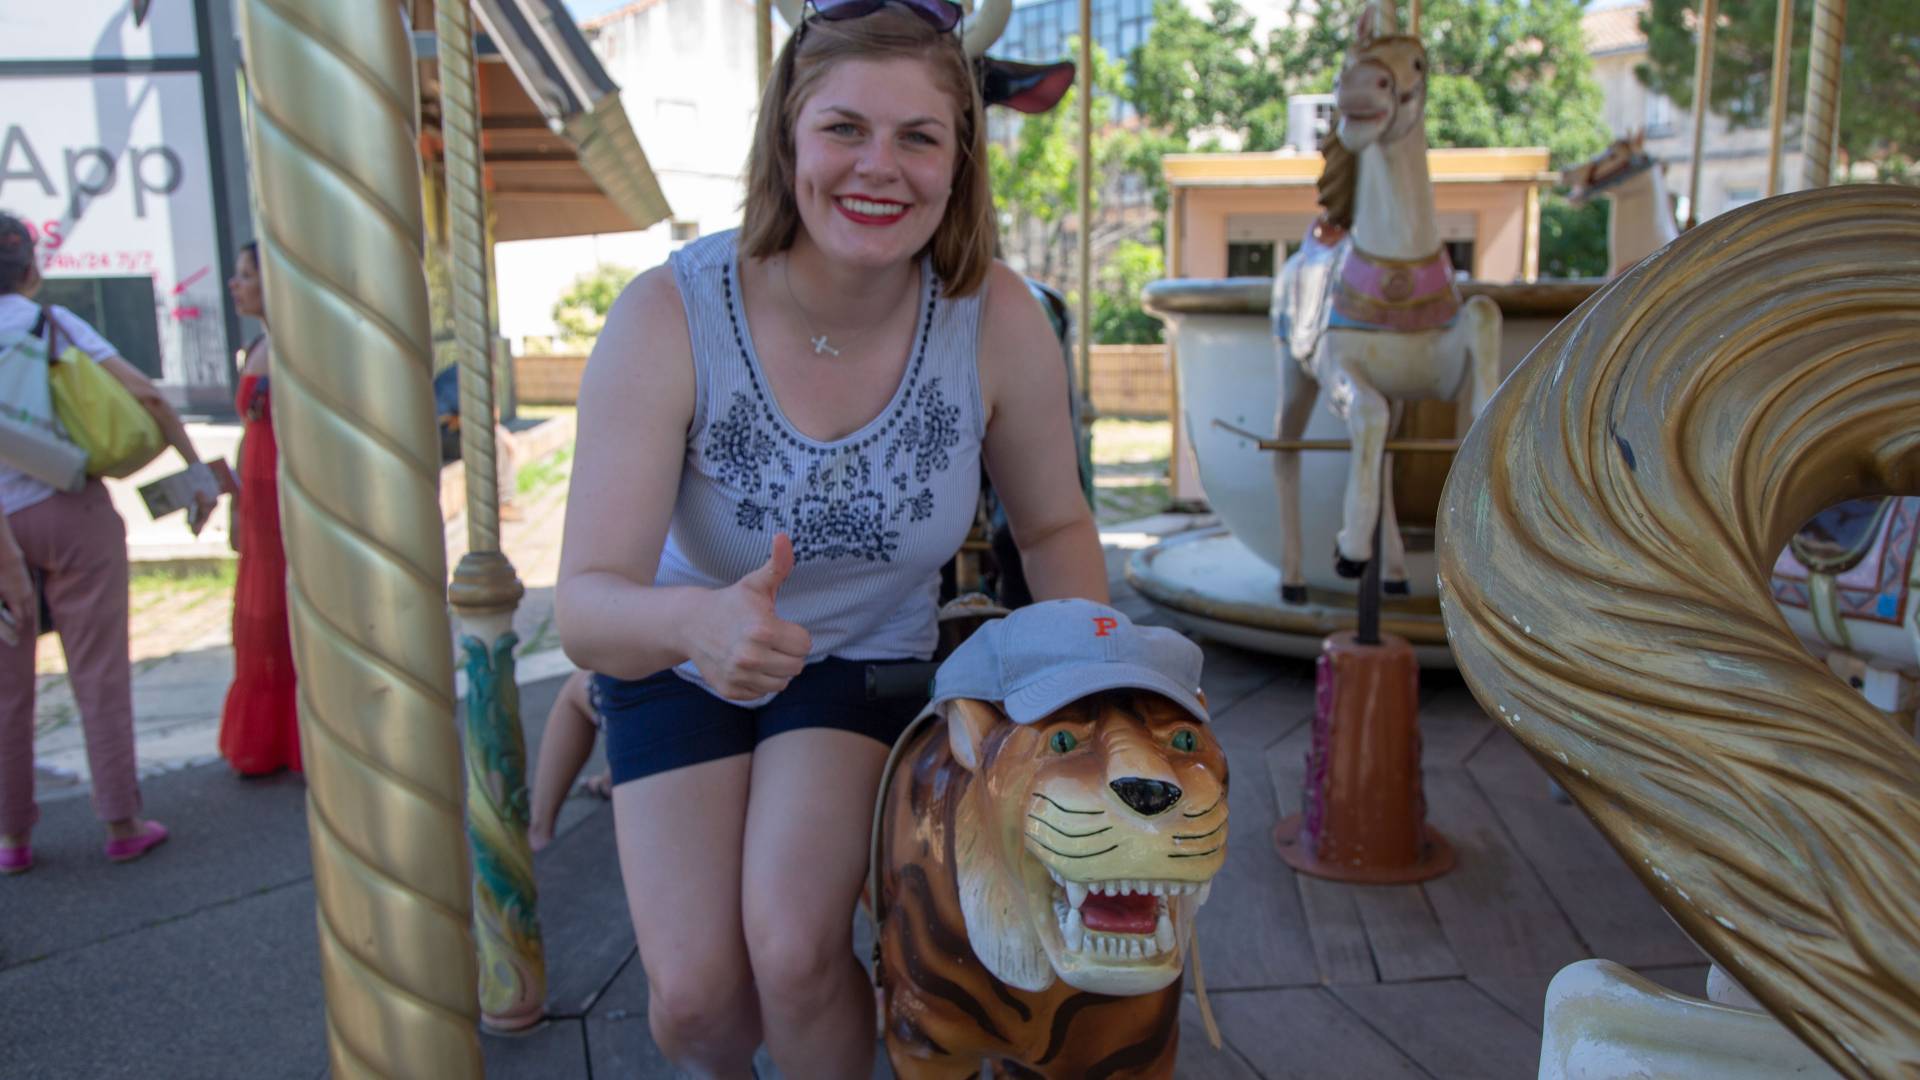 Student posing with carousel tiger wearing Princeton University hat